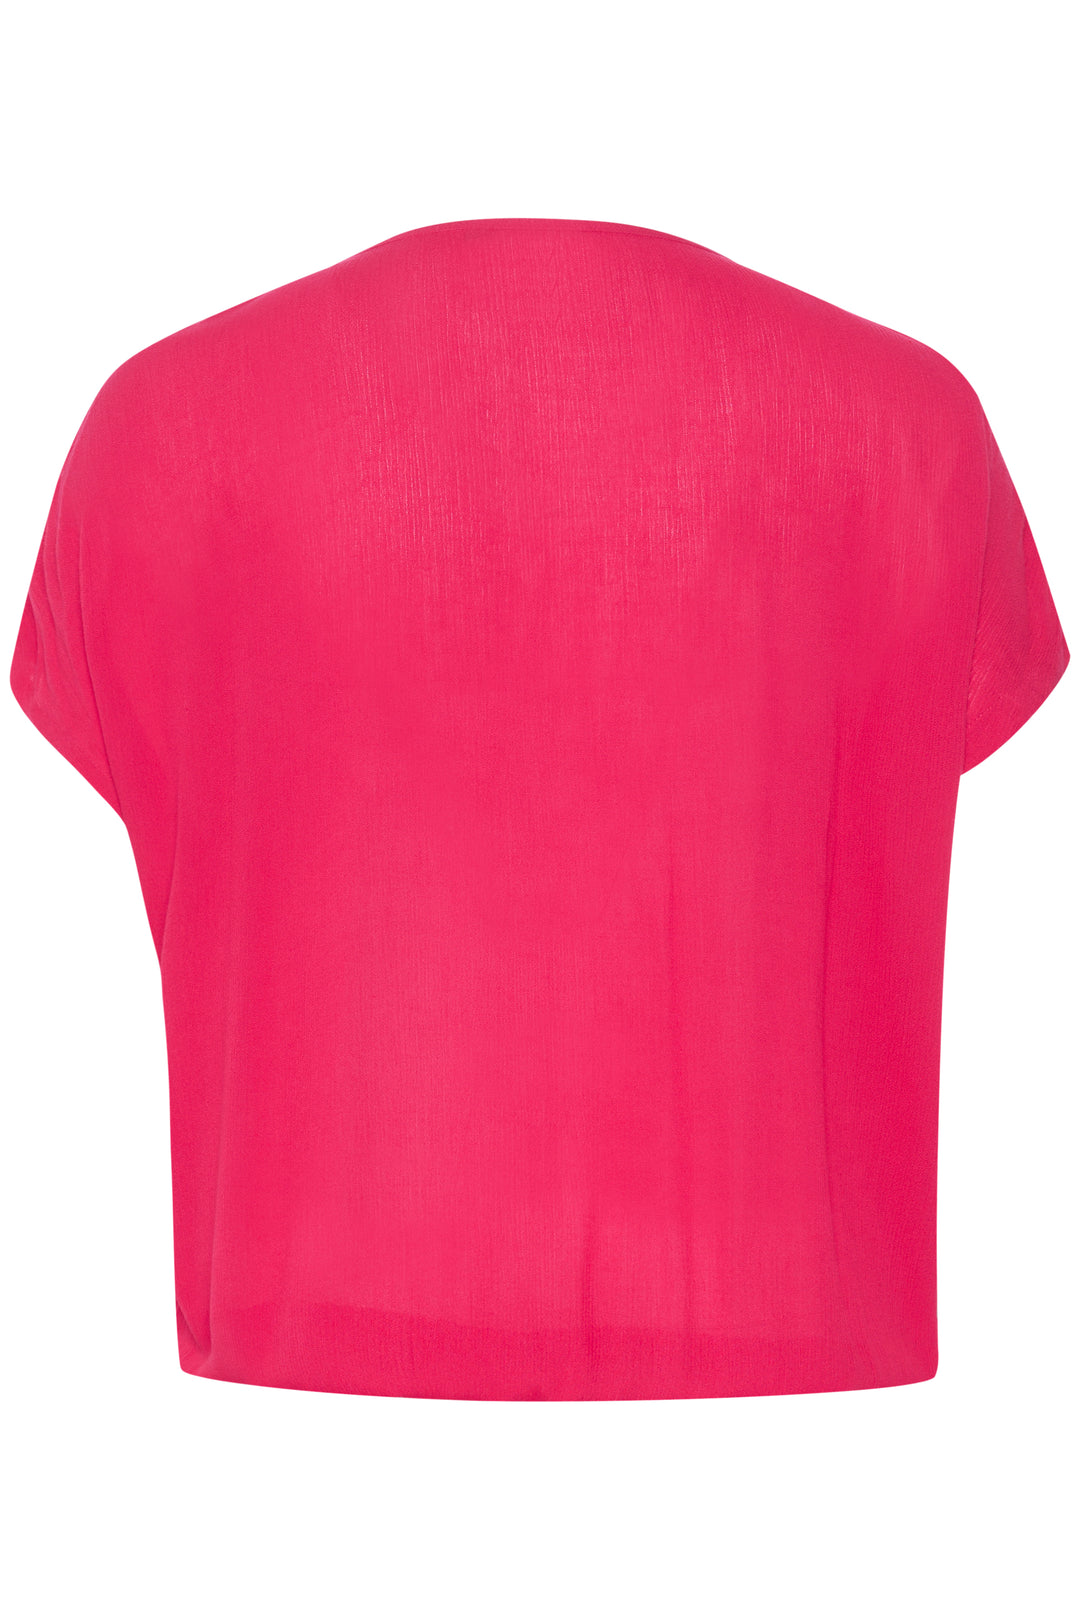 hot pink t-shirt-kaffe curve-